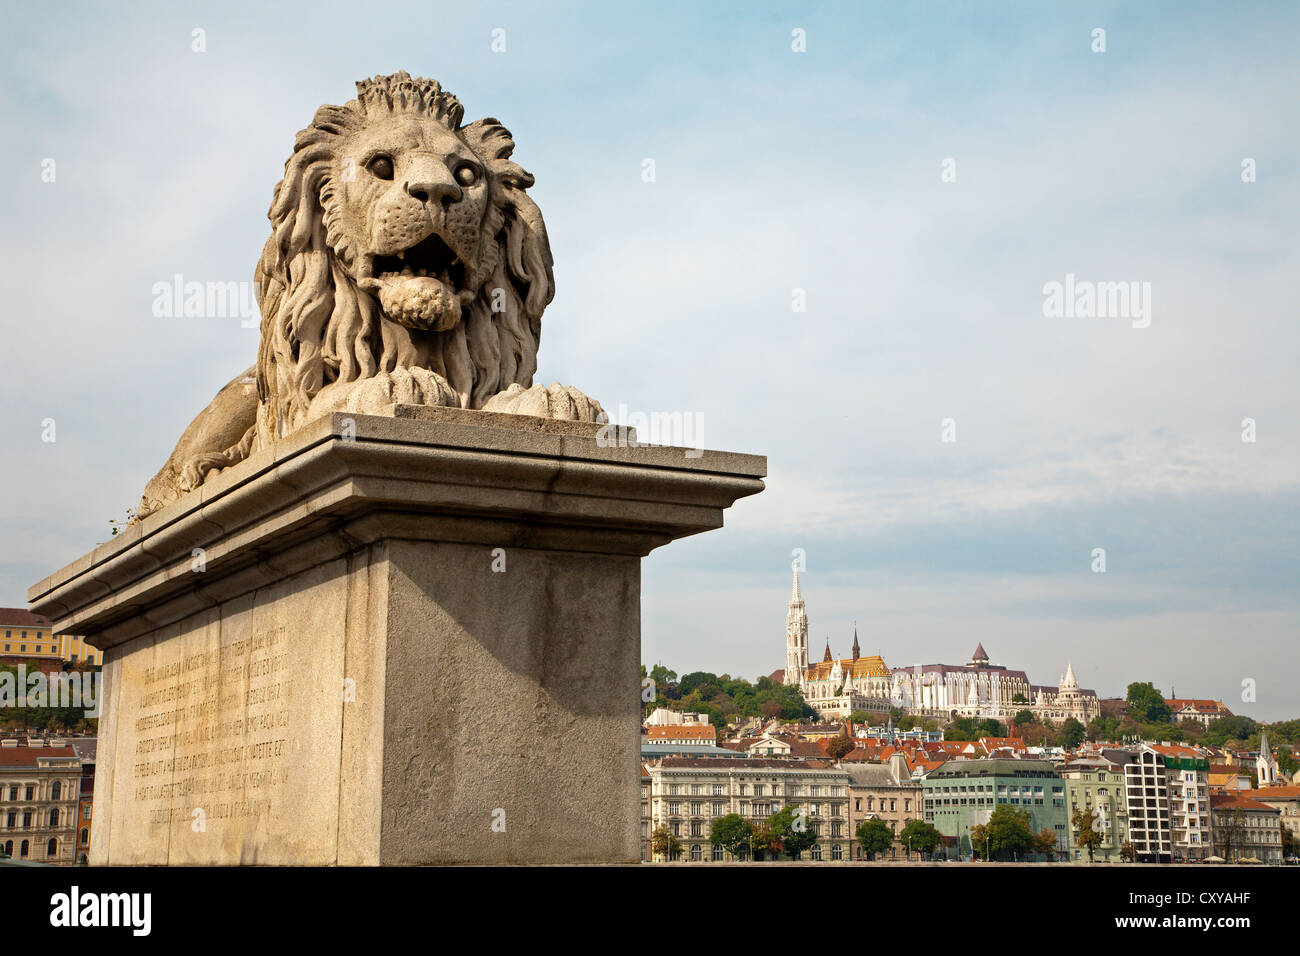 Budapest - estatua de león desde el puente de la cadena Foto de stock